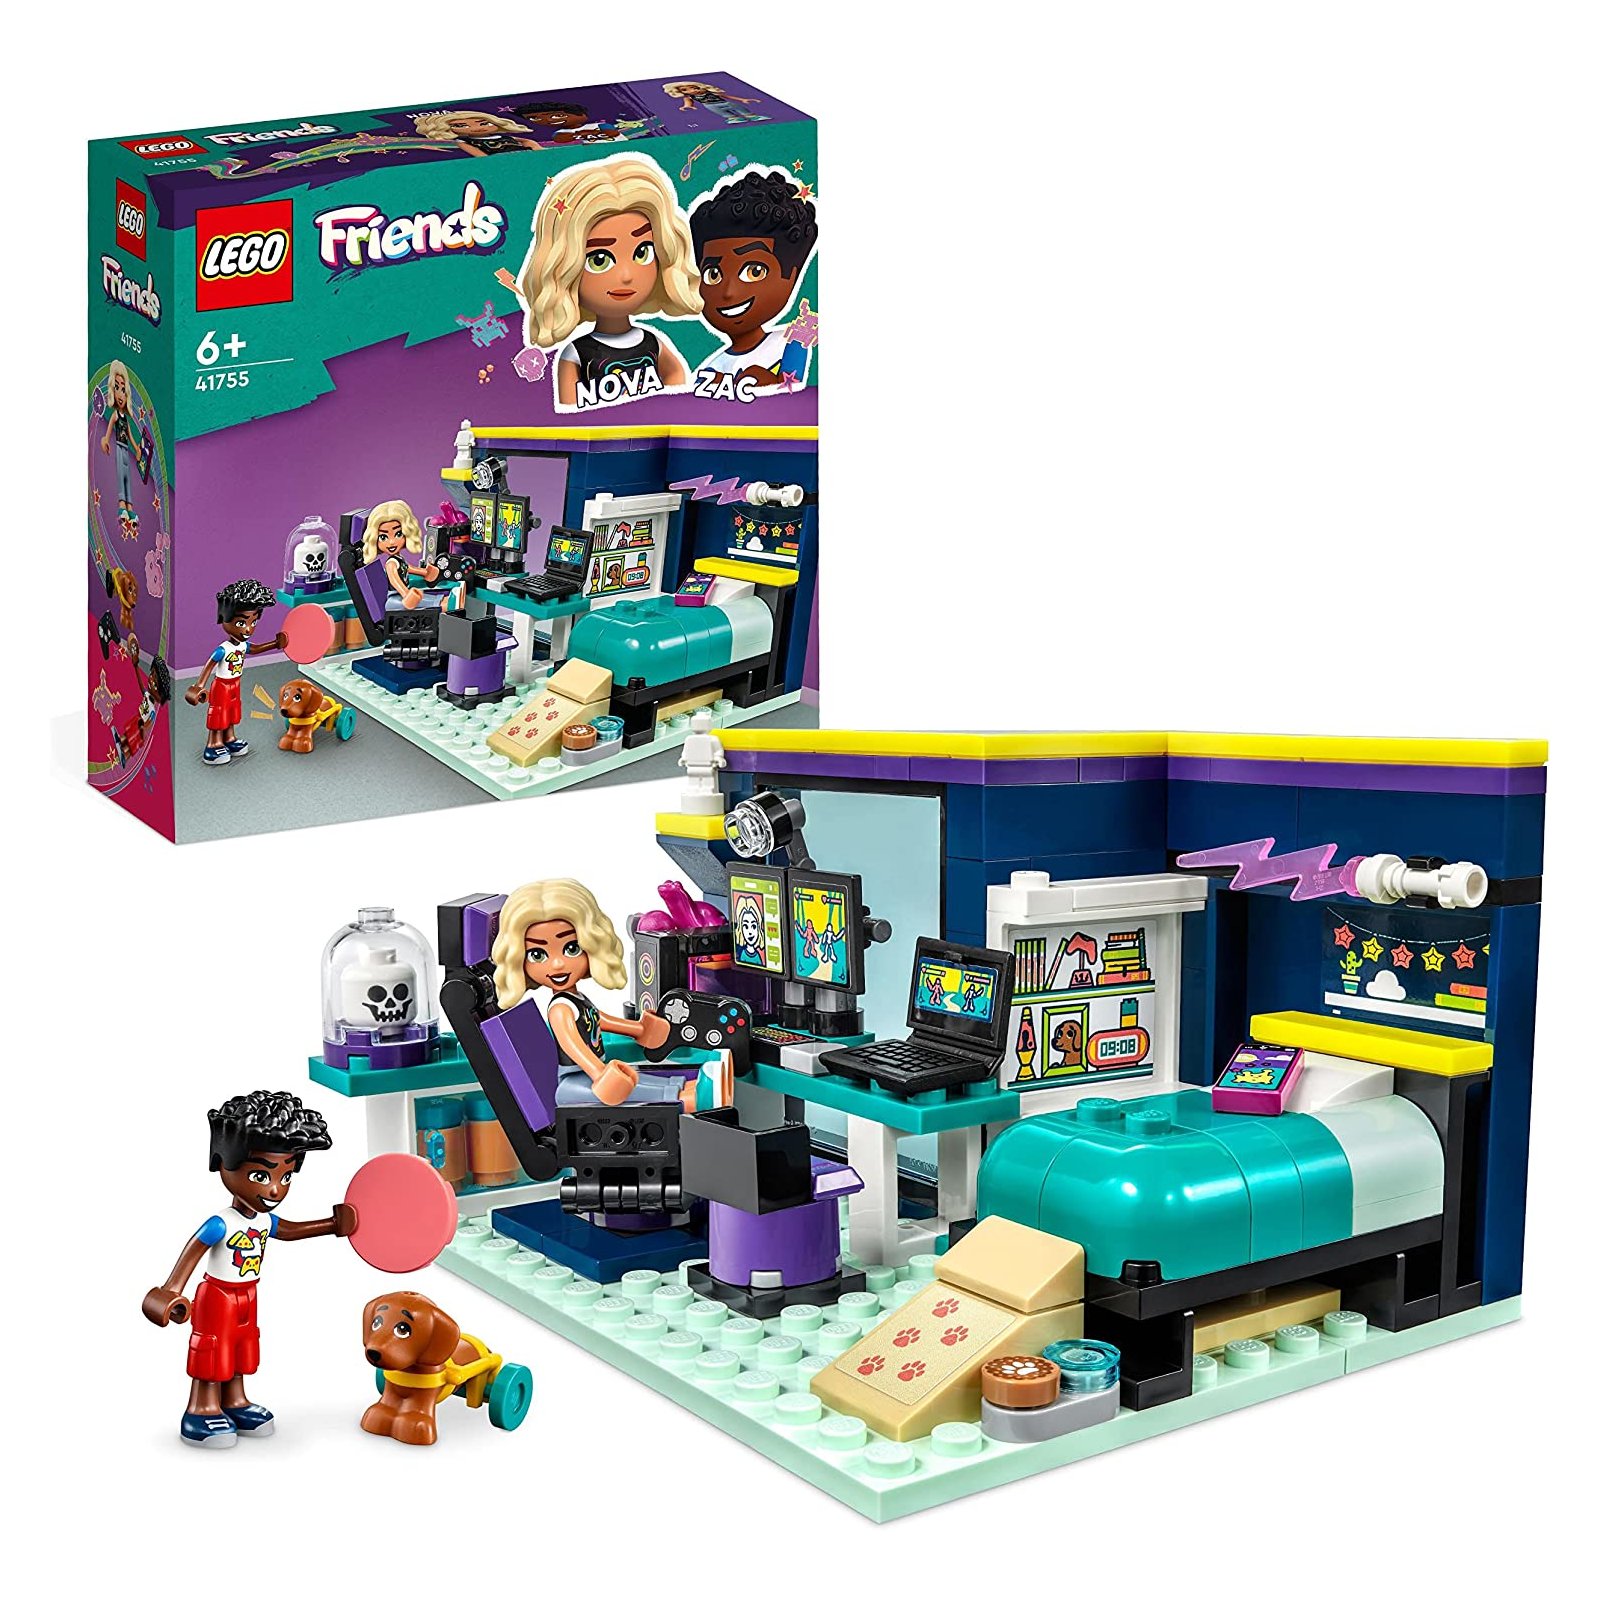 LEGO - Friends - 41755 Novas Zimmer